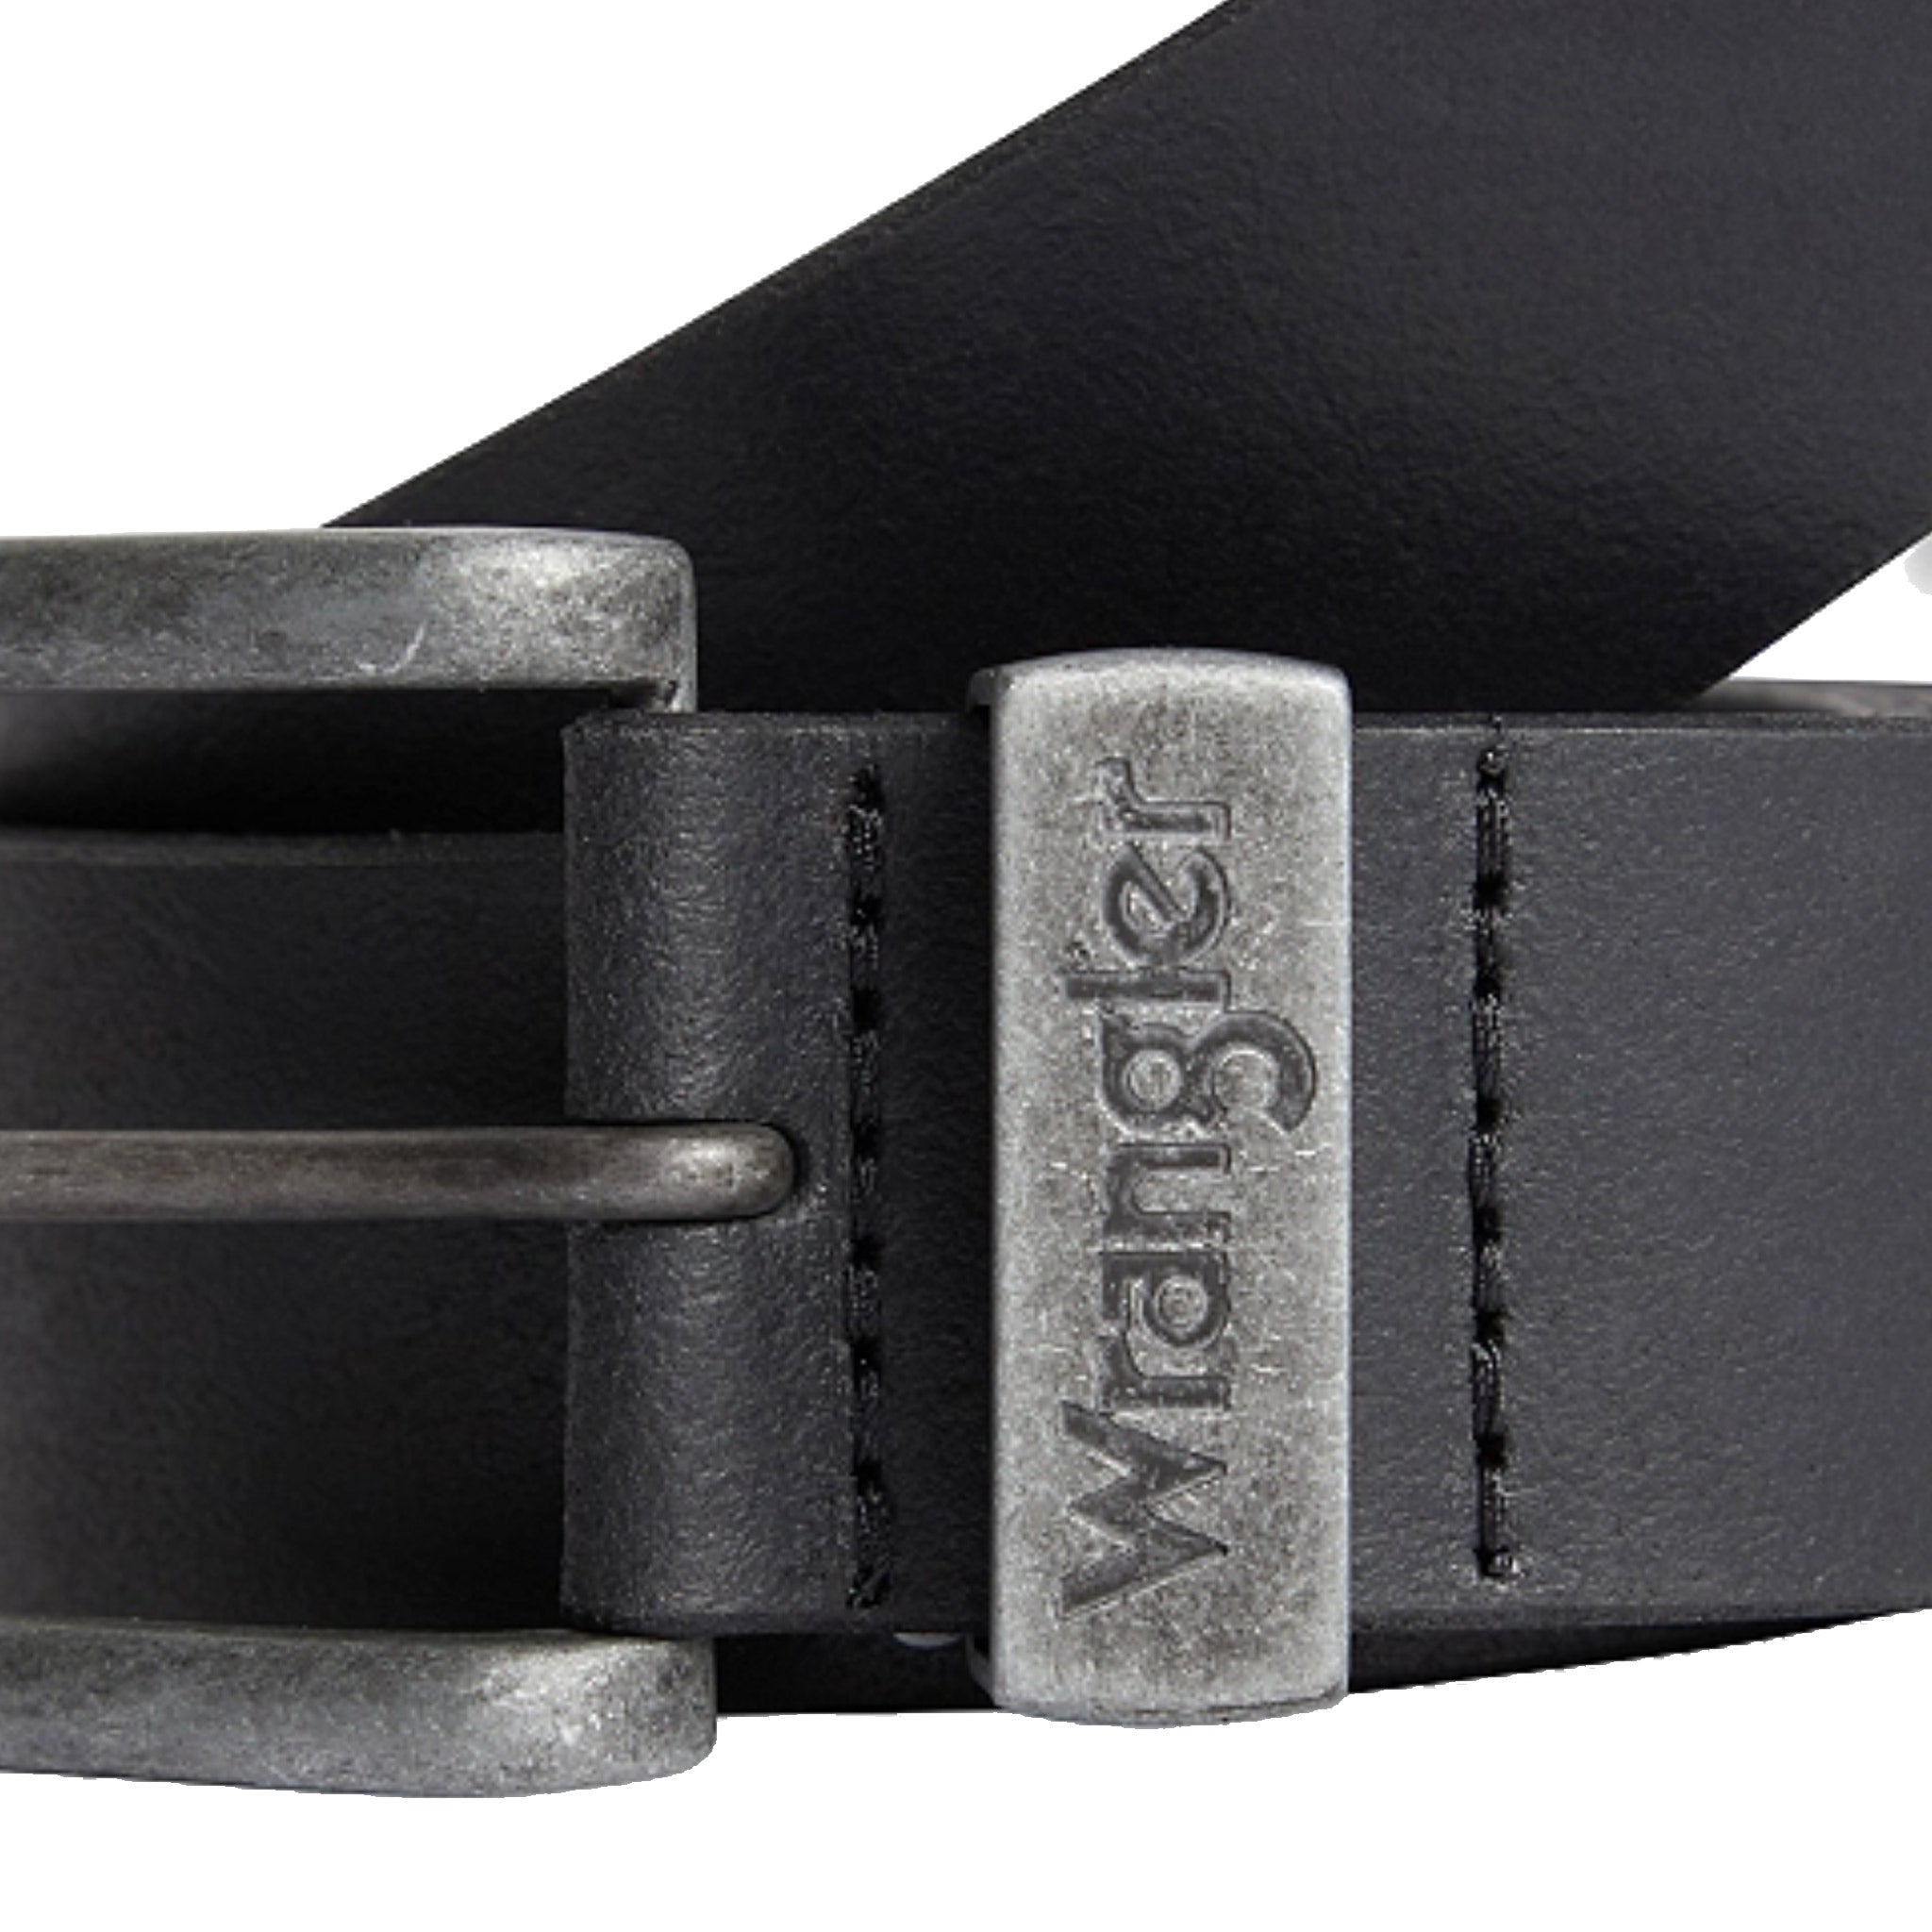 Wrangler Metal Loop Belt - Black